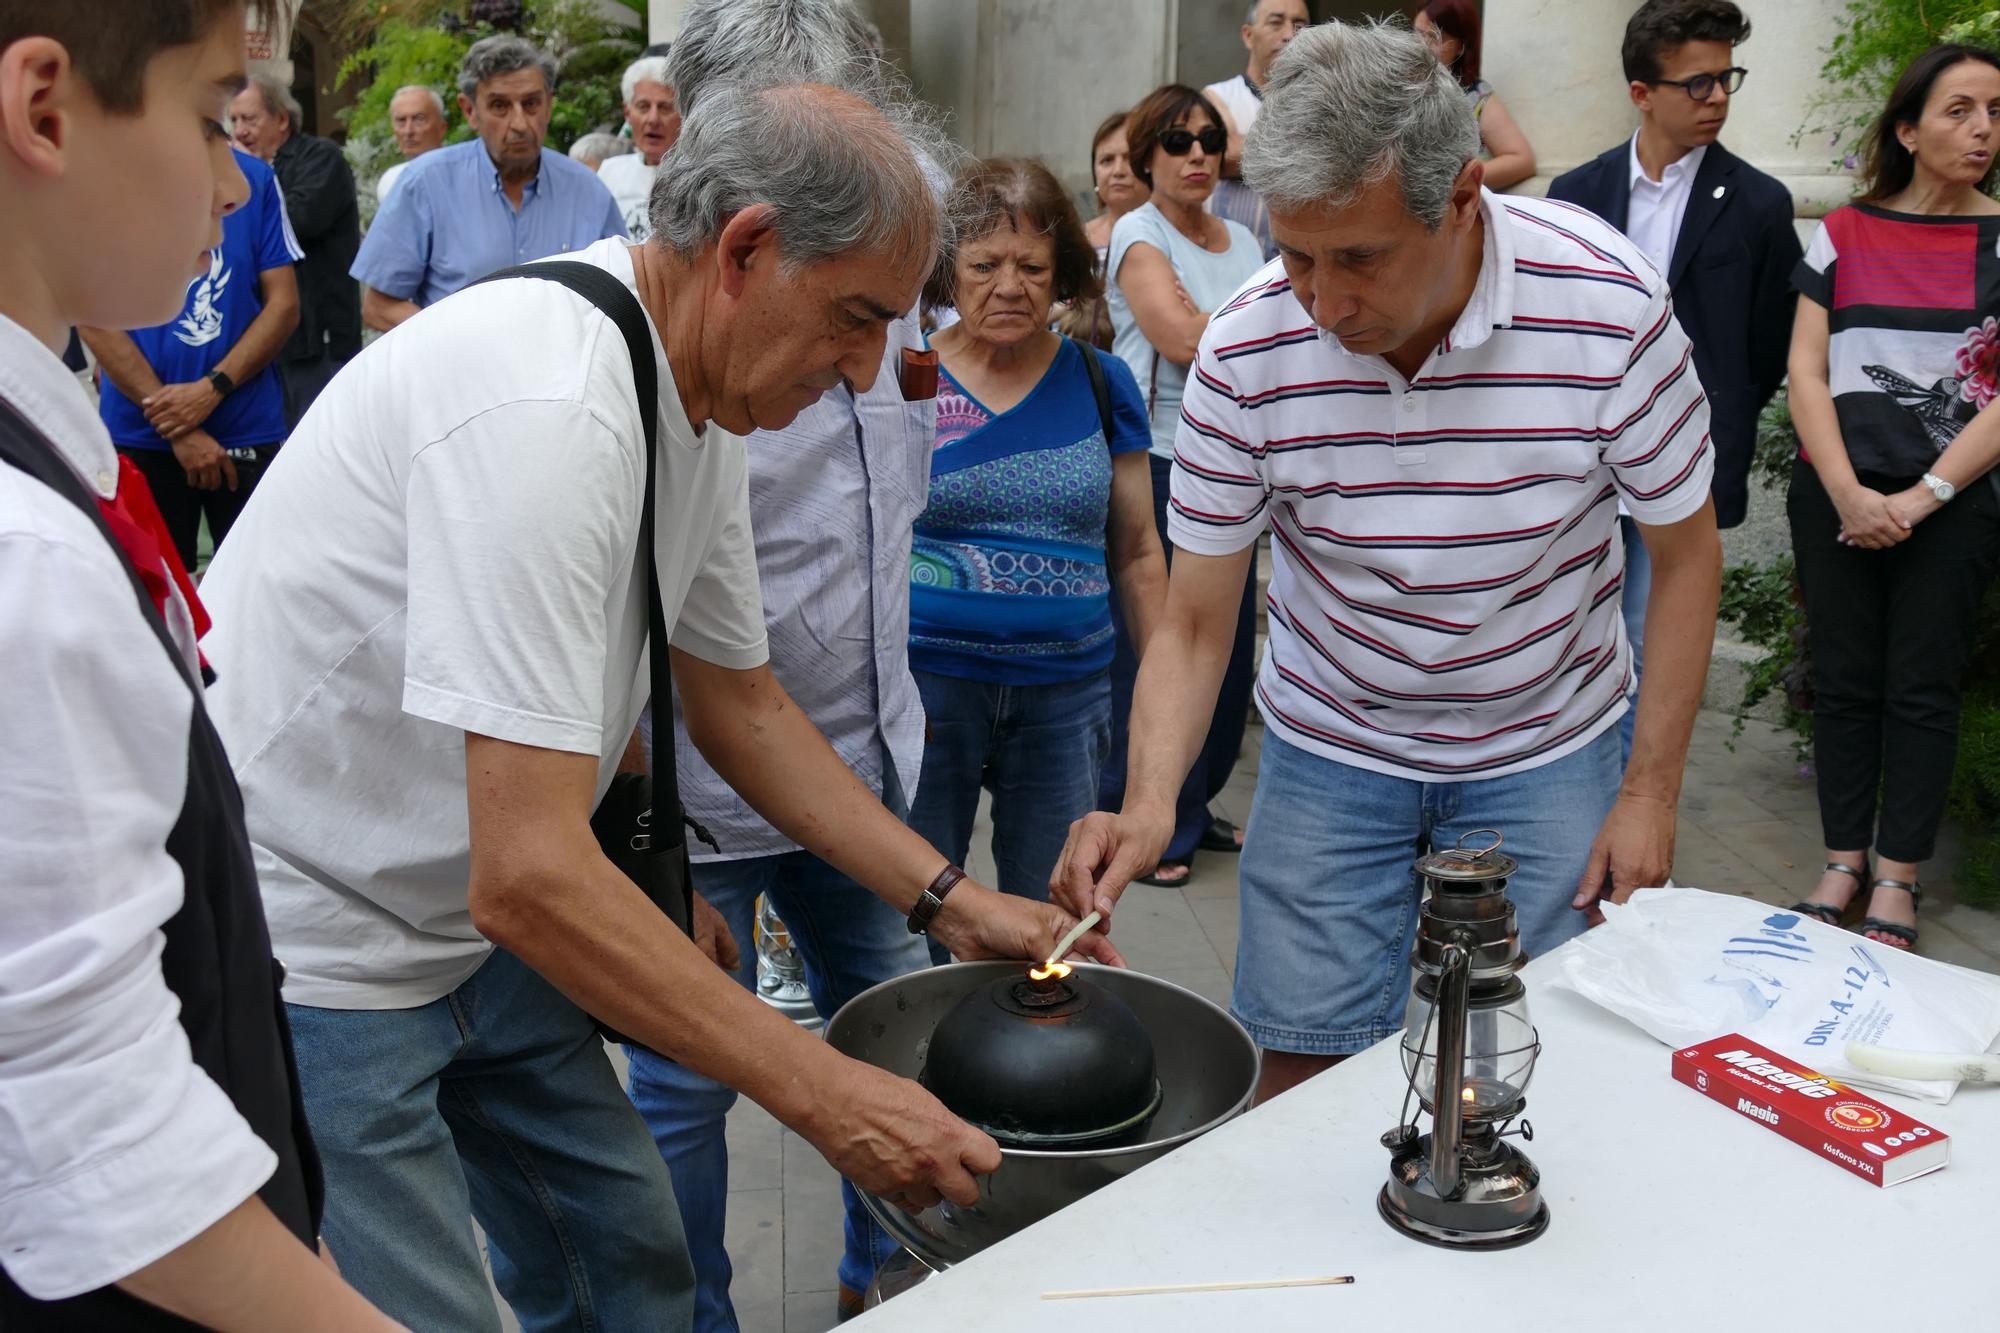 La Flama del Canigó és rebuda a Figueres per desenes de persones